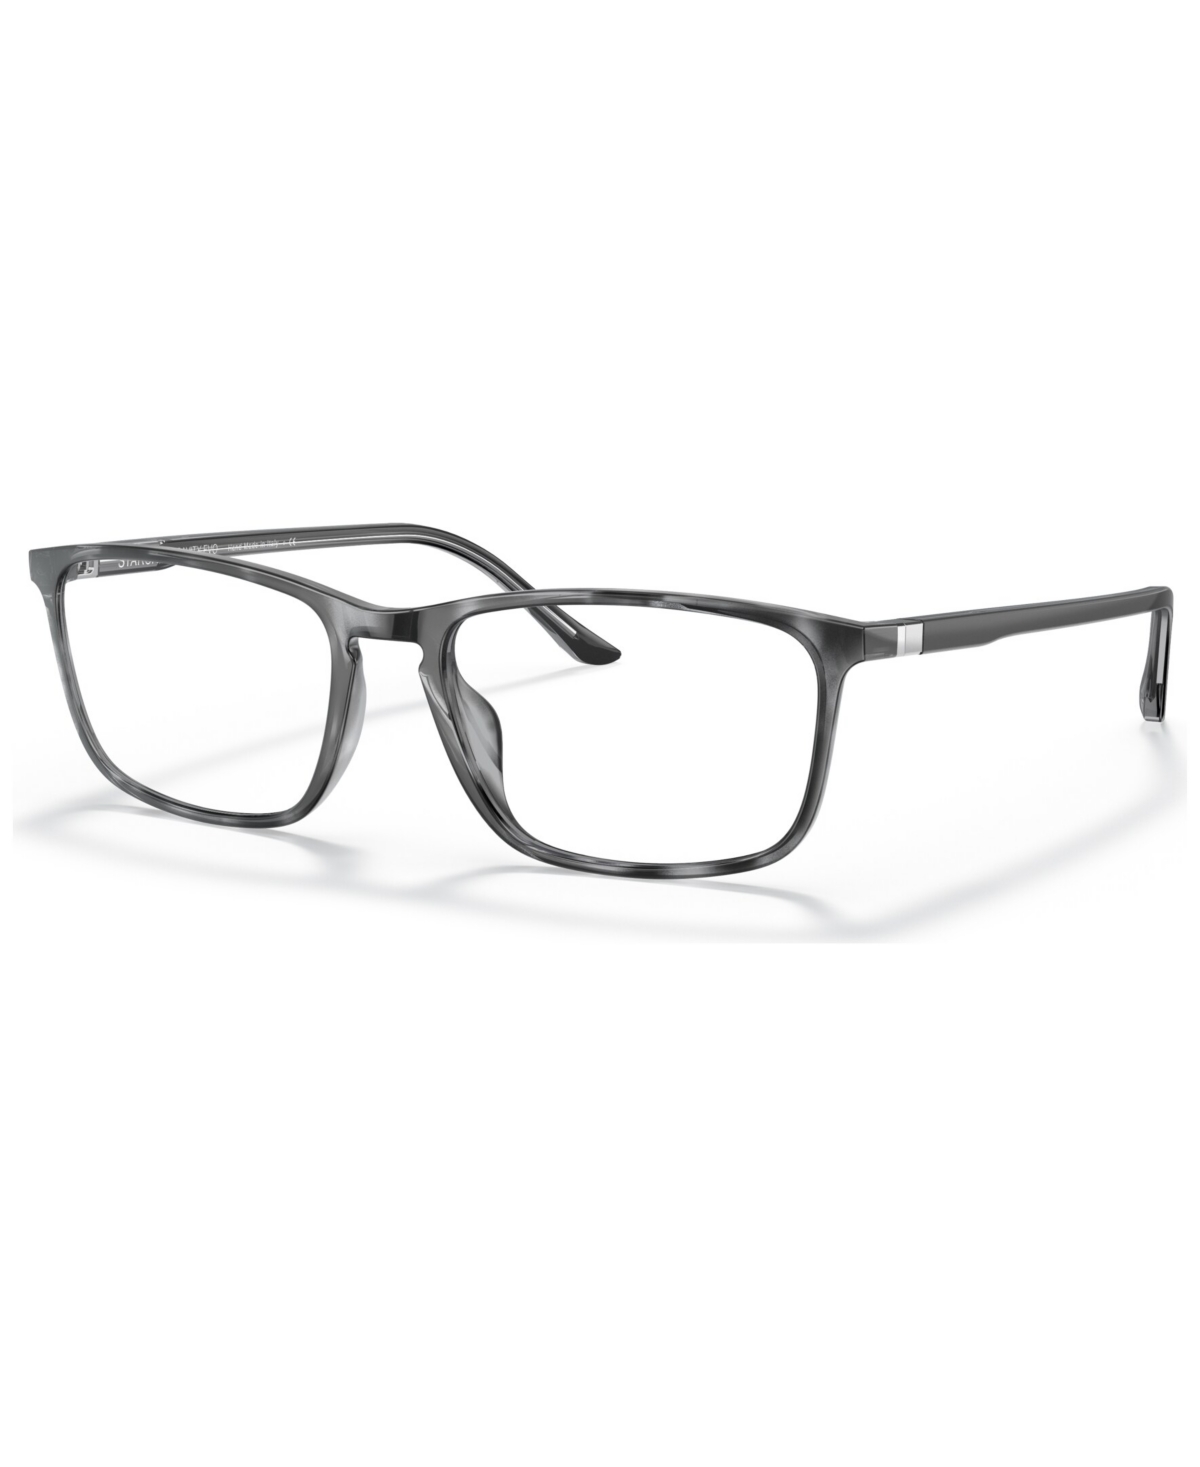 Men's Eyeglasses, SH3073 55 - Gray Havana